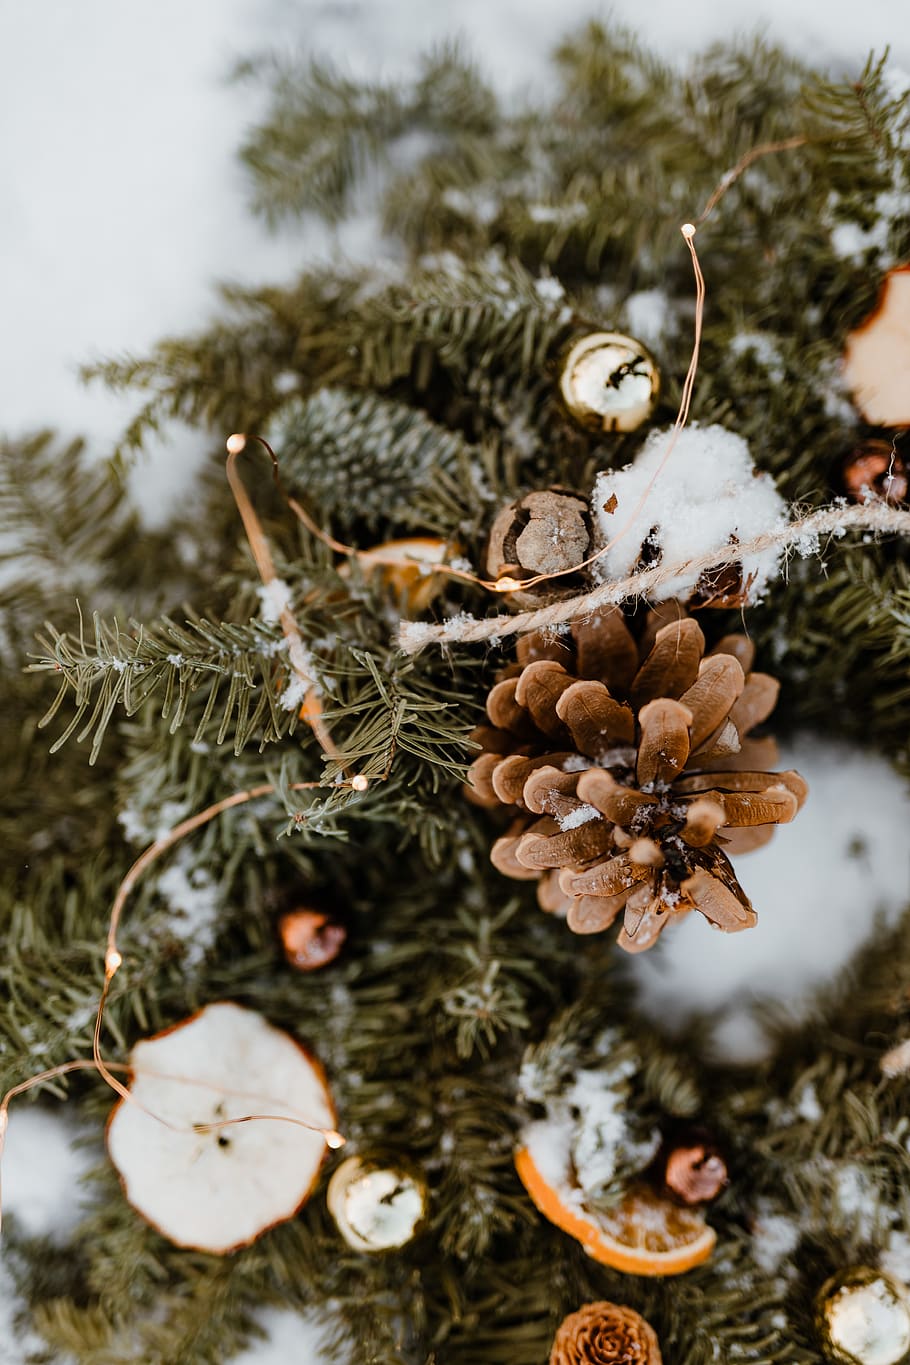 natal, decoração, decorações, dezembro, neve, Inverno, Coroa de flores, planta, árvore, natureza